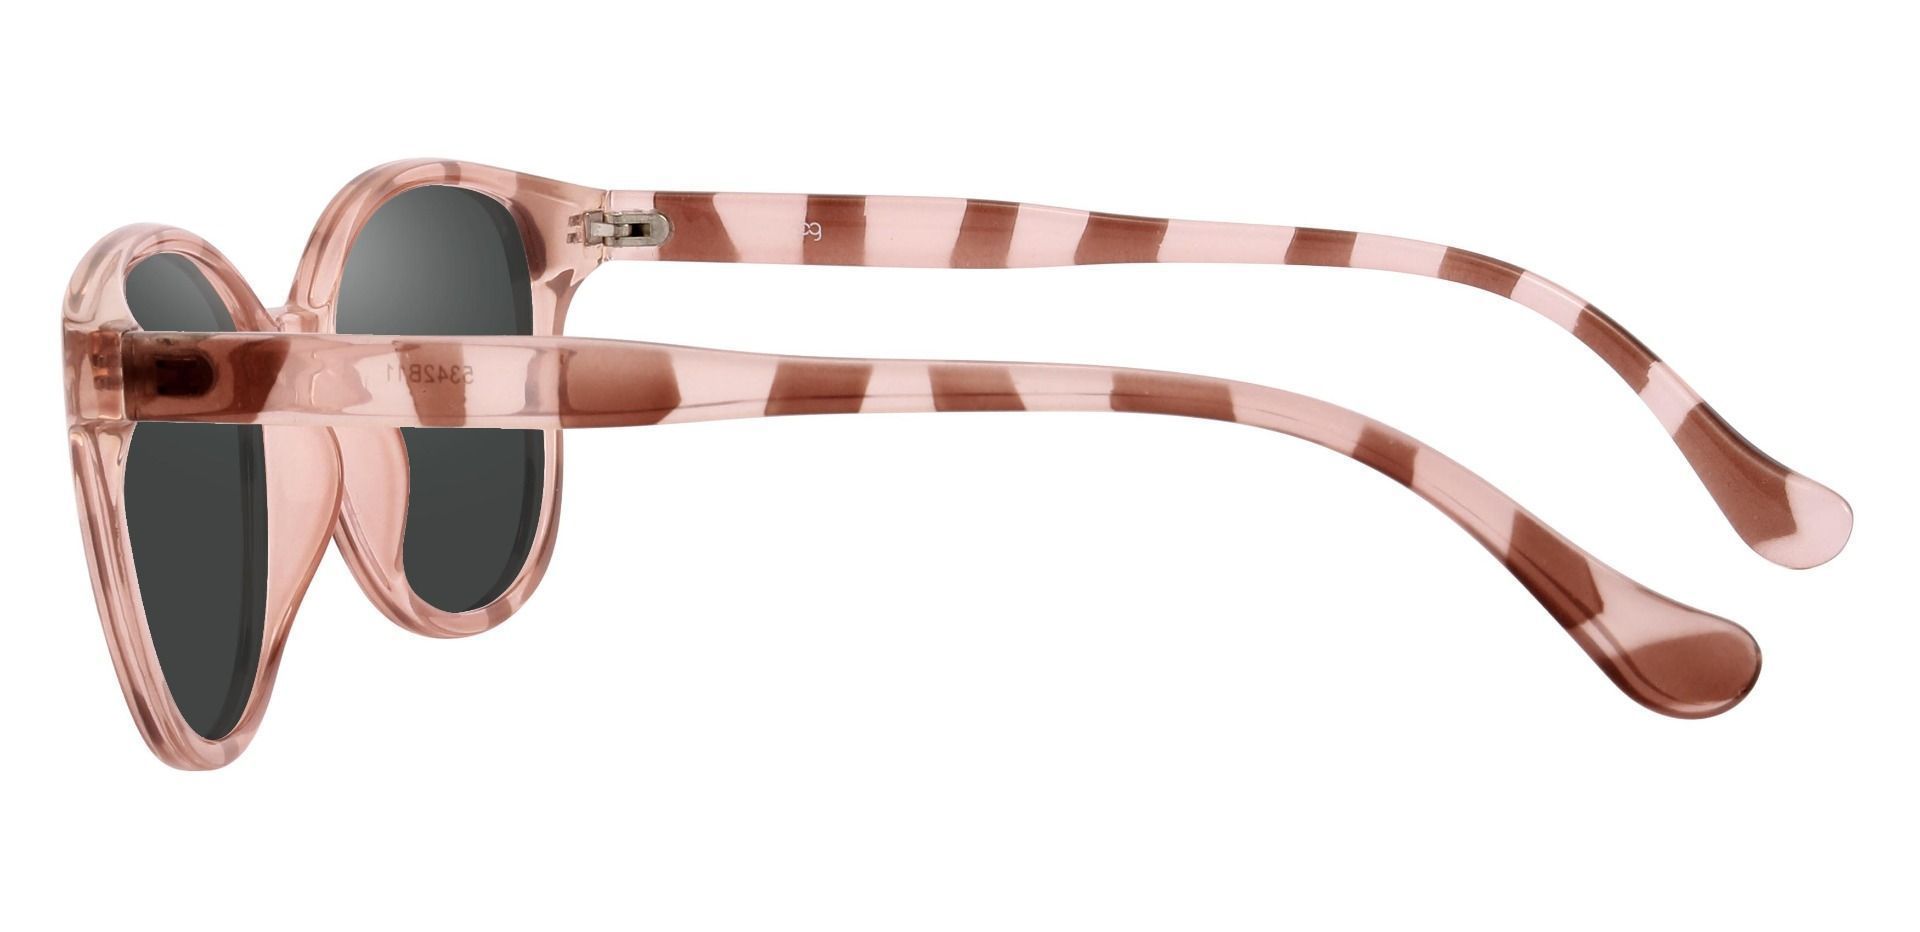 Carrick Square Prescription Sunglasses - Multi Color Frame With Gray Lenses